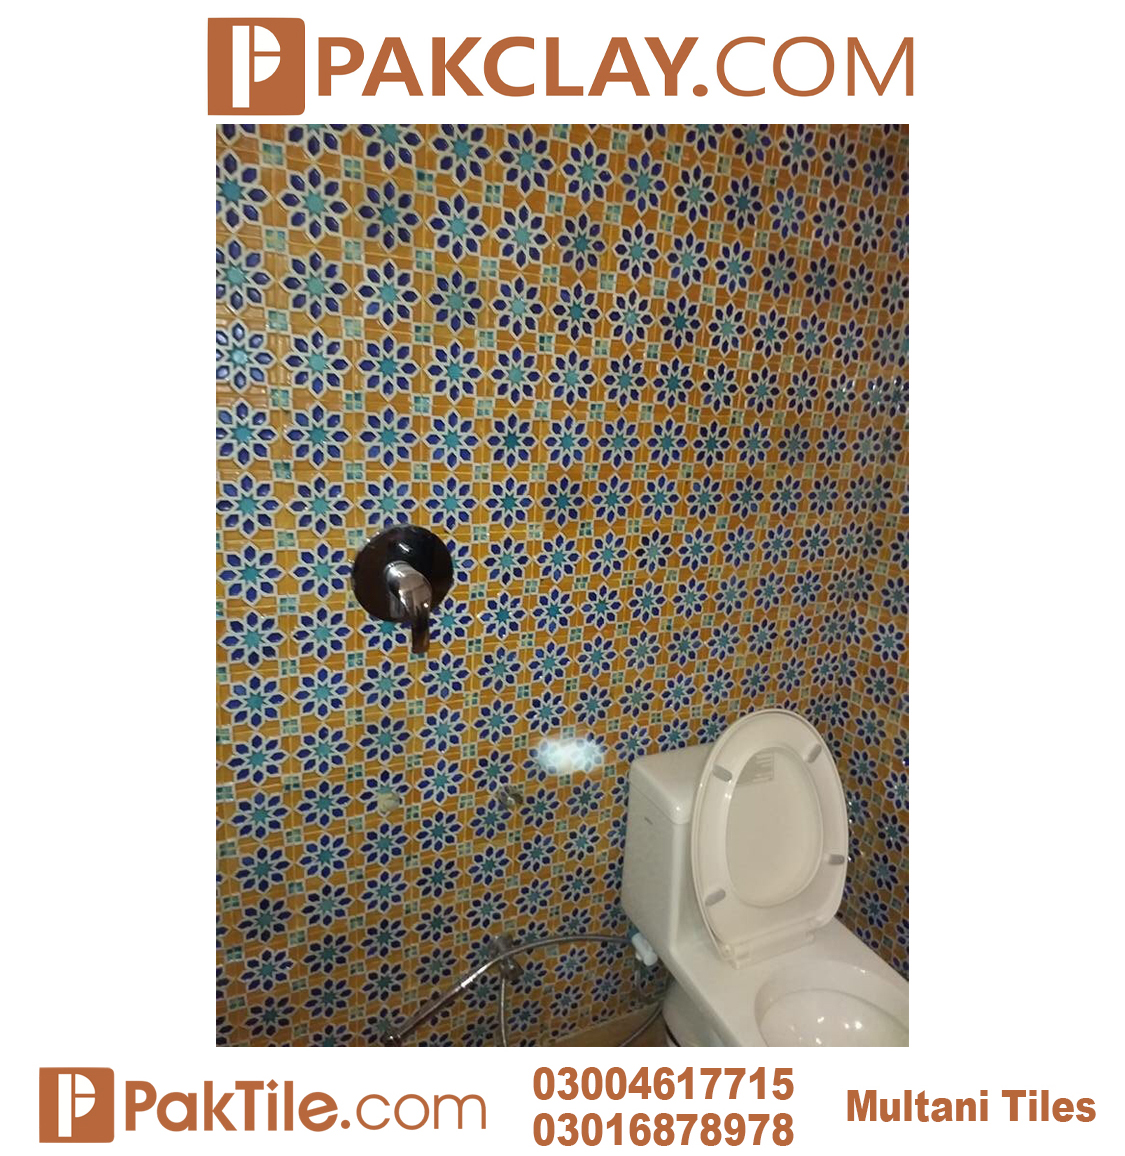 3 Bathroom Moroccan Tiles in Pakistan